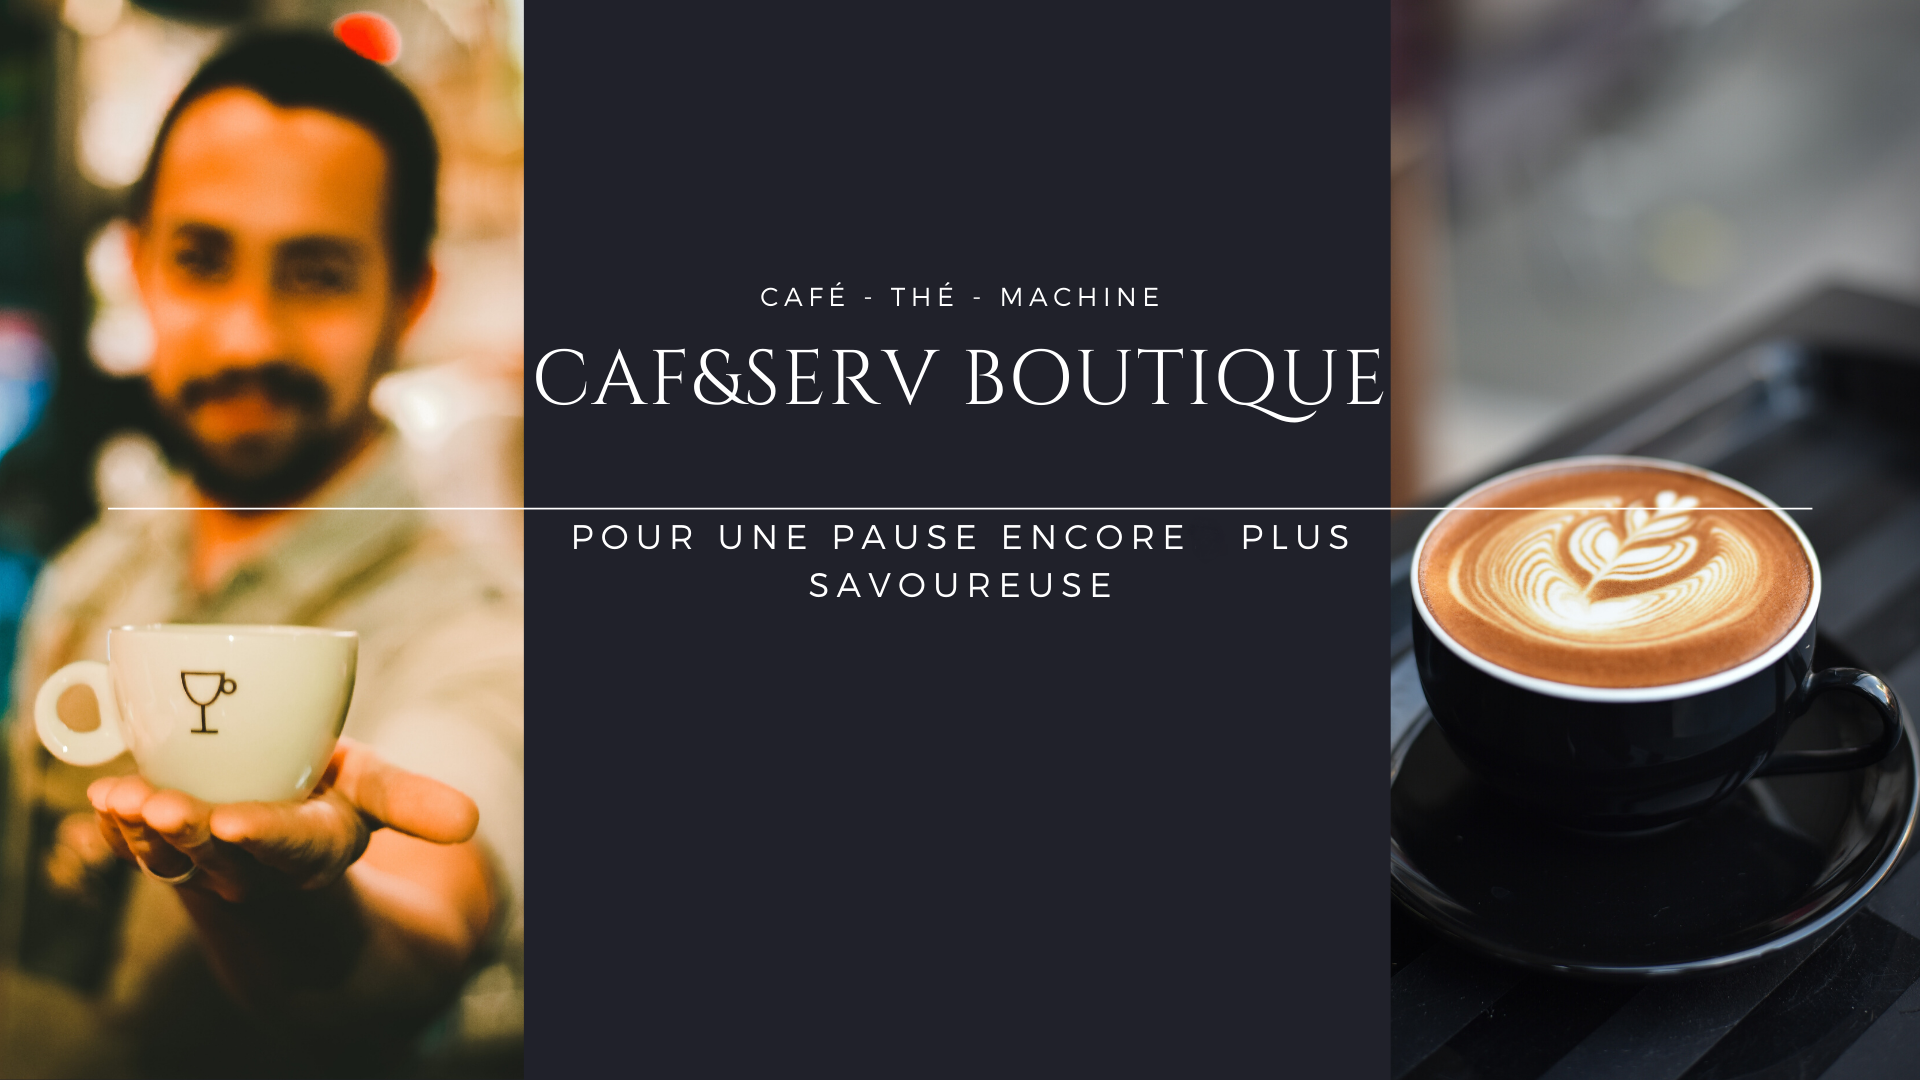 caf&serv boutique, vente de café, thé, machine. offre de vente et location de machine à café